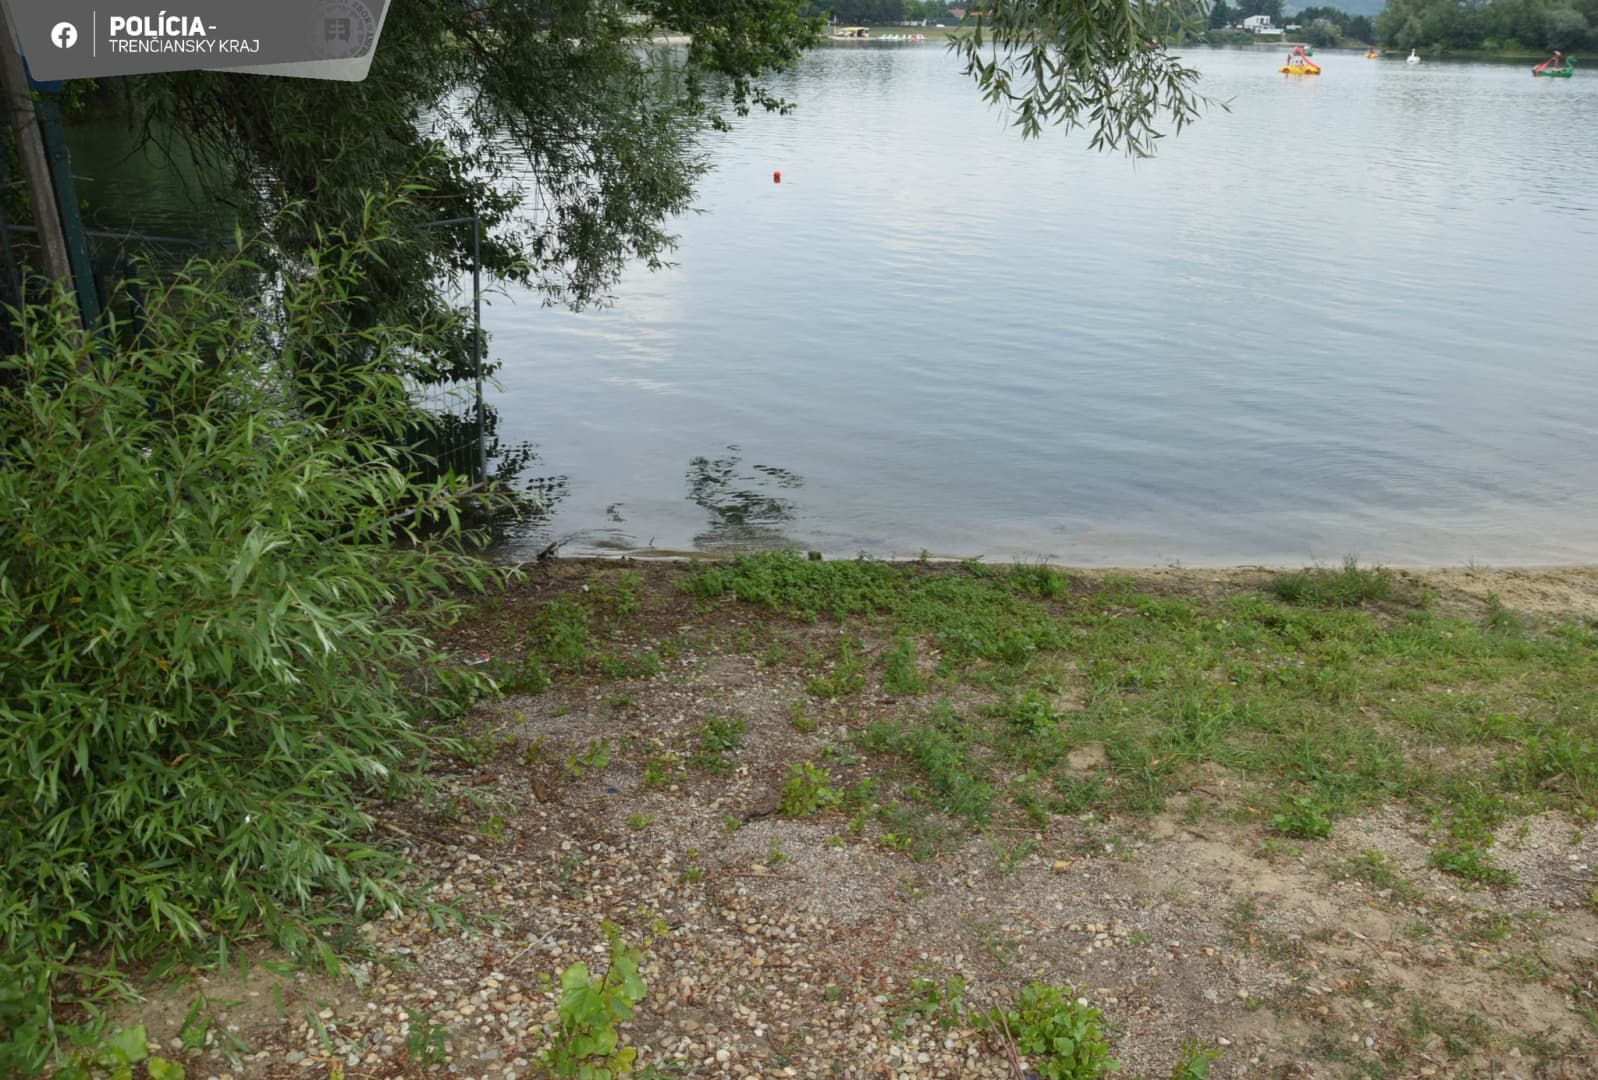 Elátkozott tó: szombaton megfulladt egy férfi, másnap lebénult egy apuka, miközben a lányával bolondozott